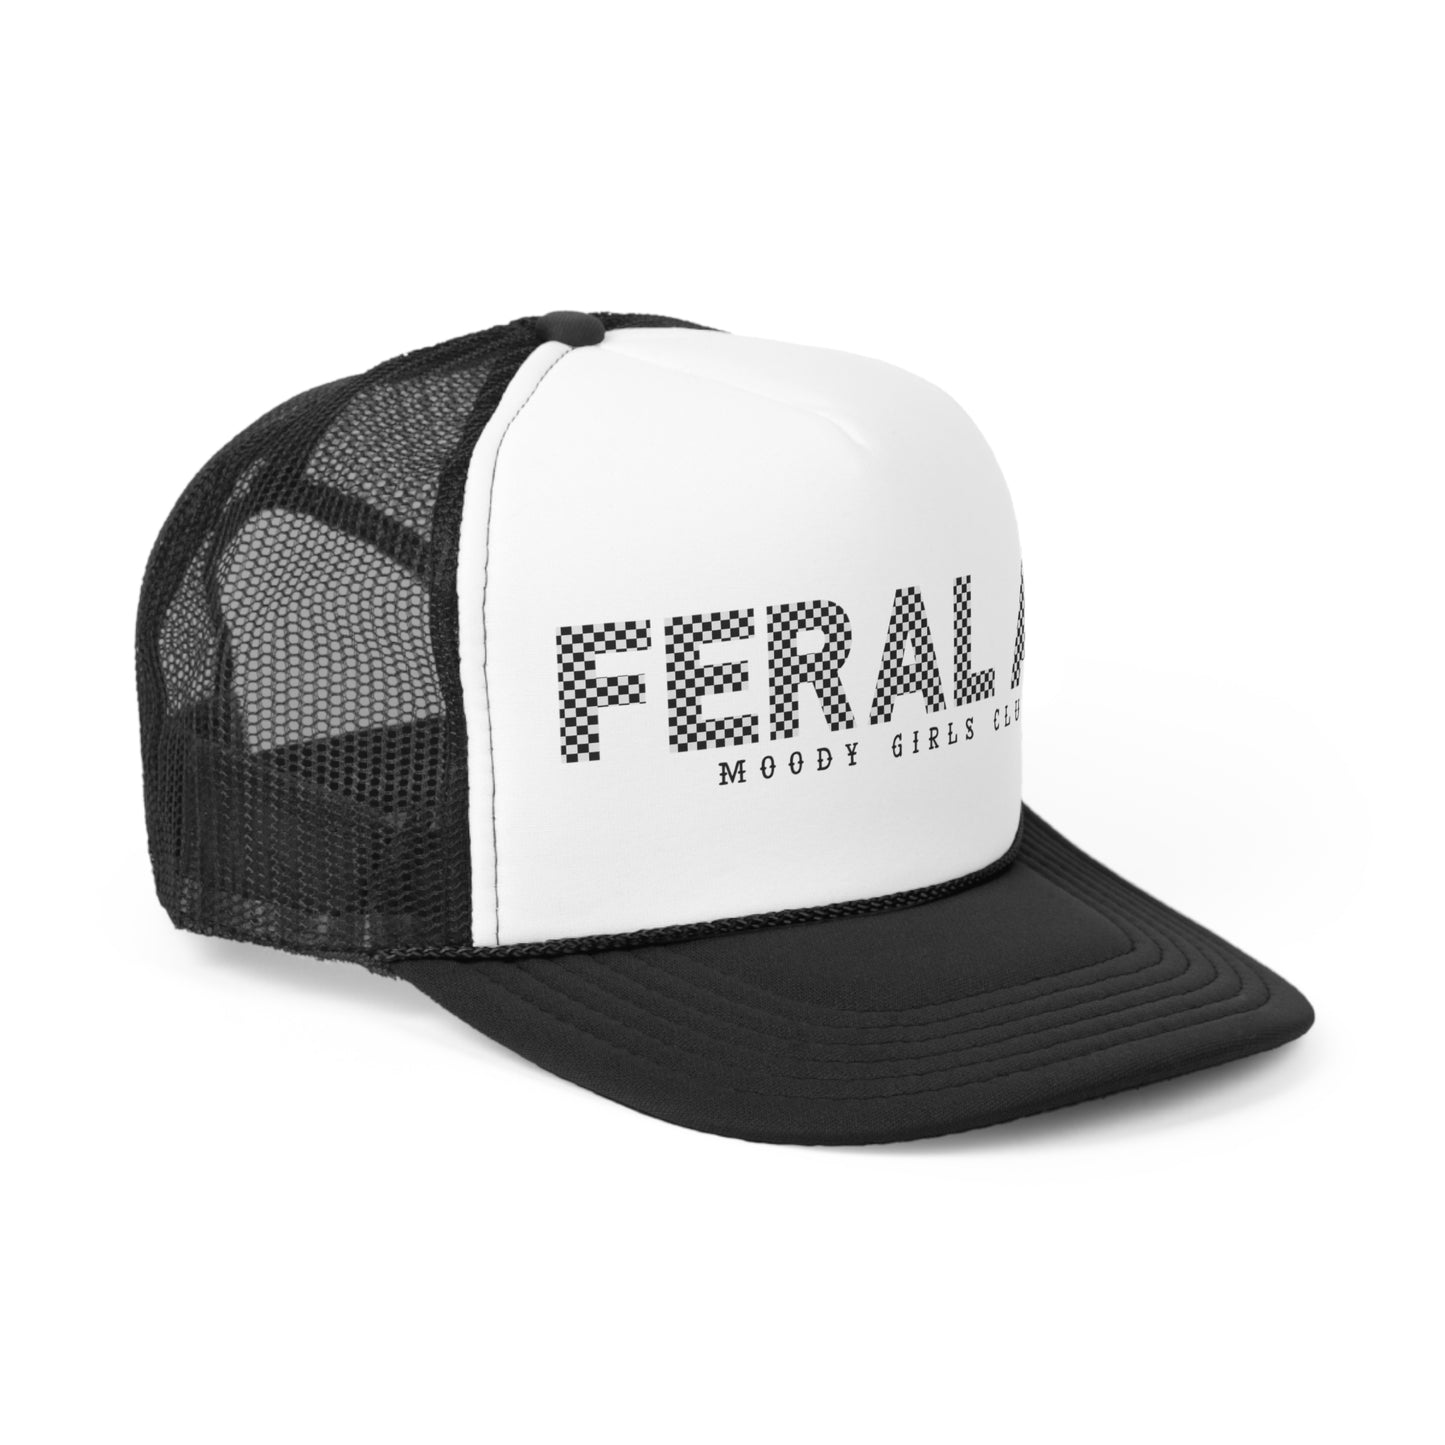 FERAL AF Trucker Hats